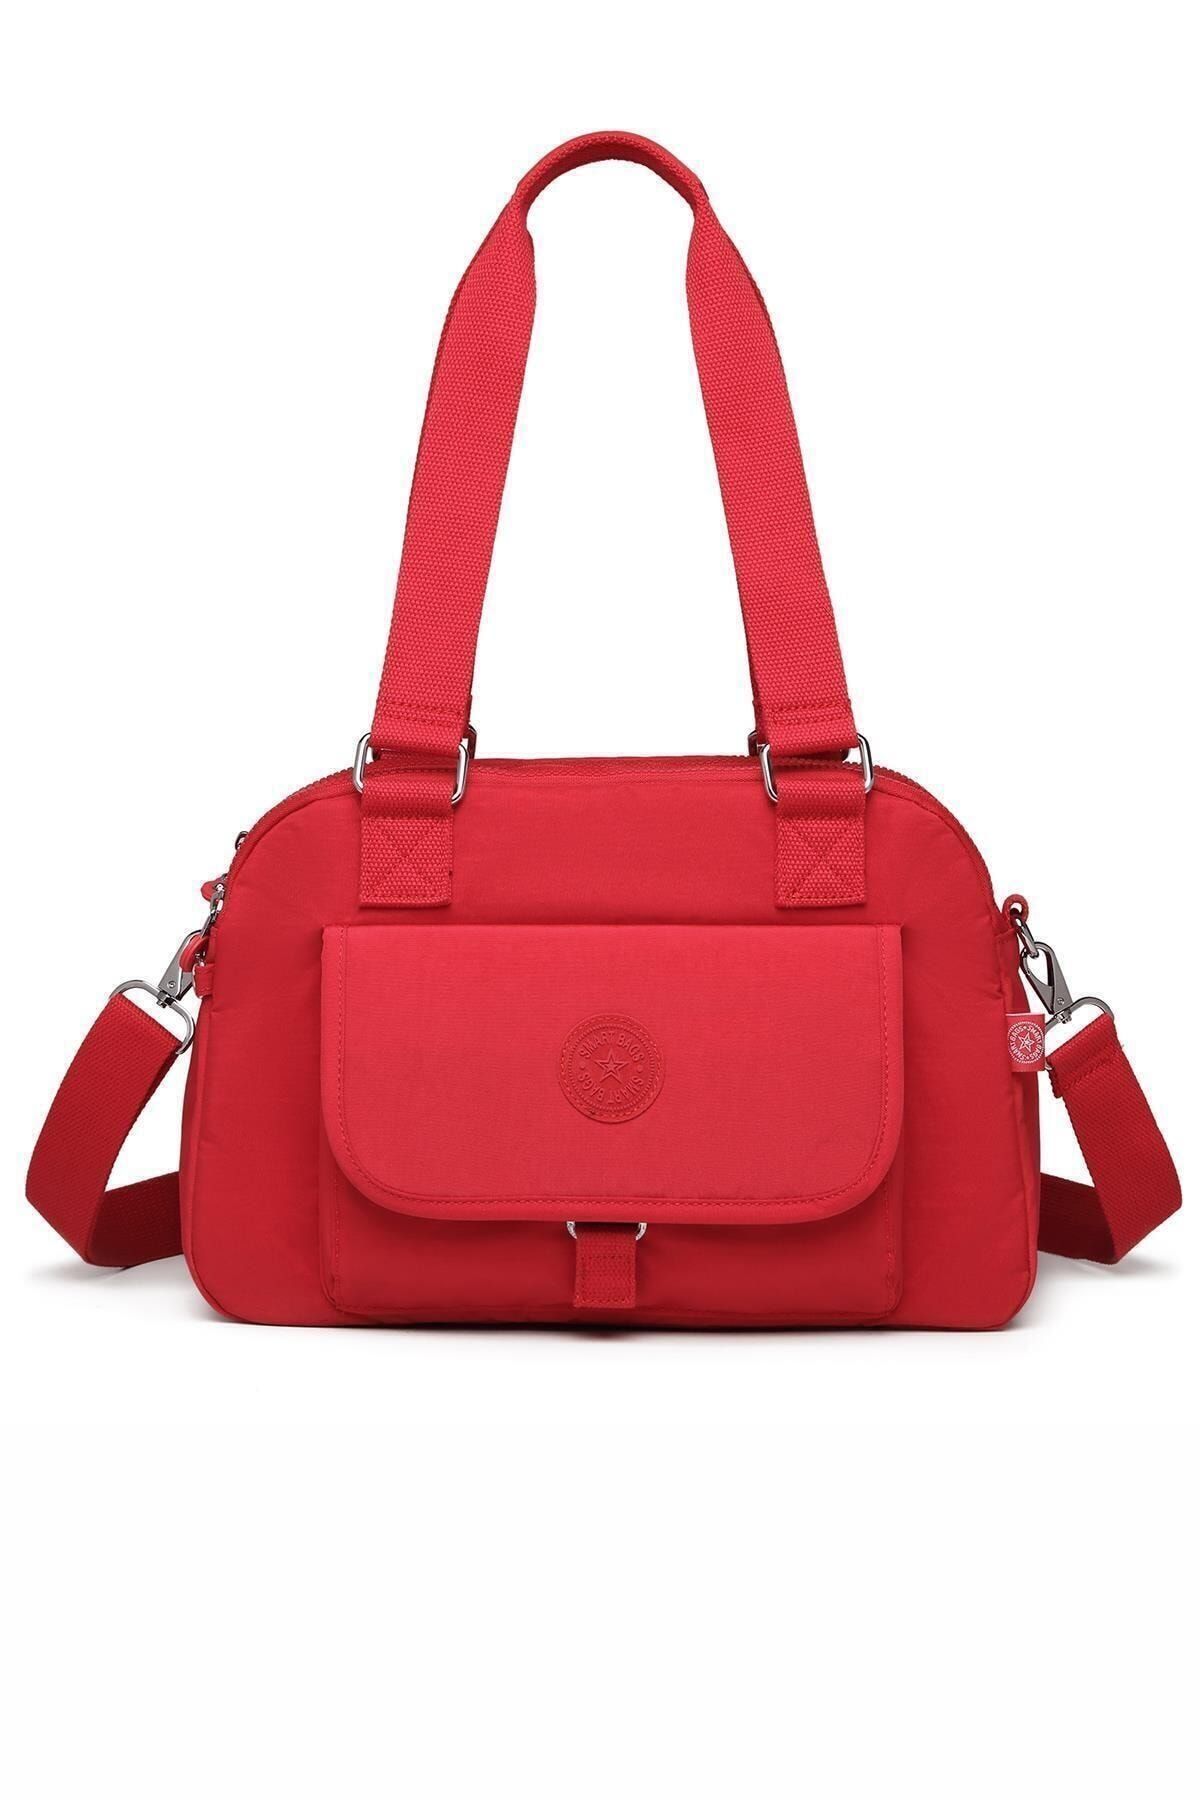 Smart Bags Smb1122 Kırmızı Kadın Omuz Çantası